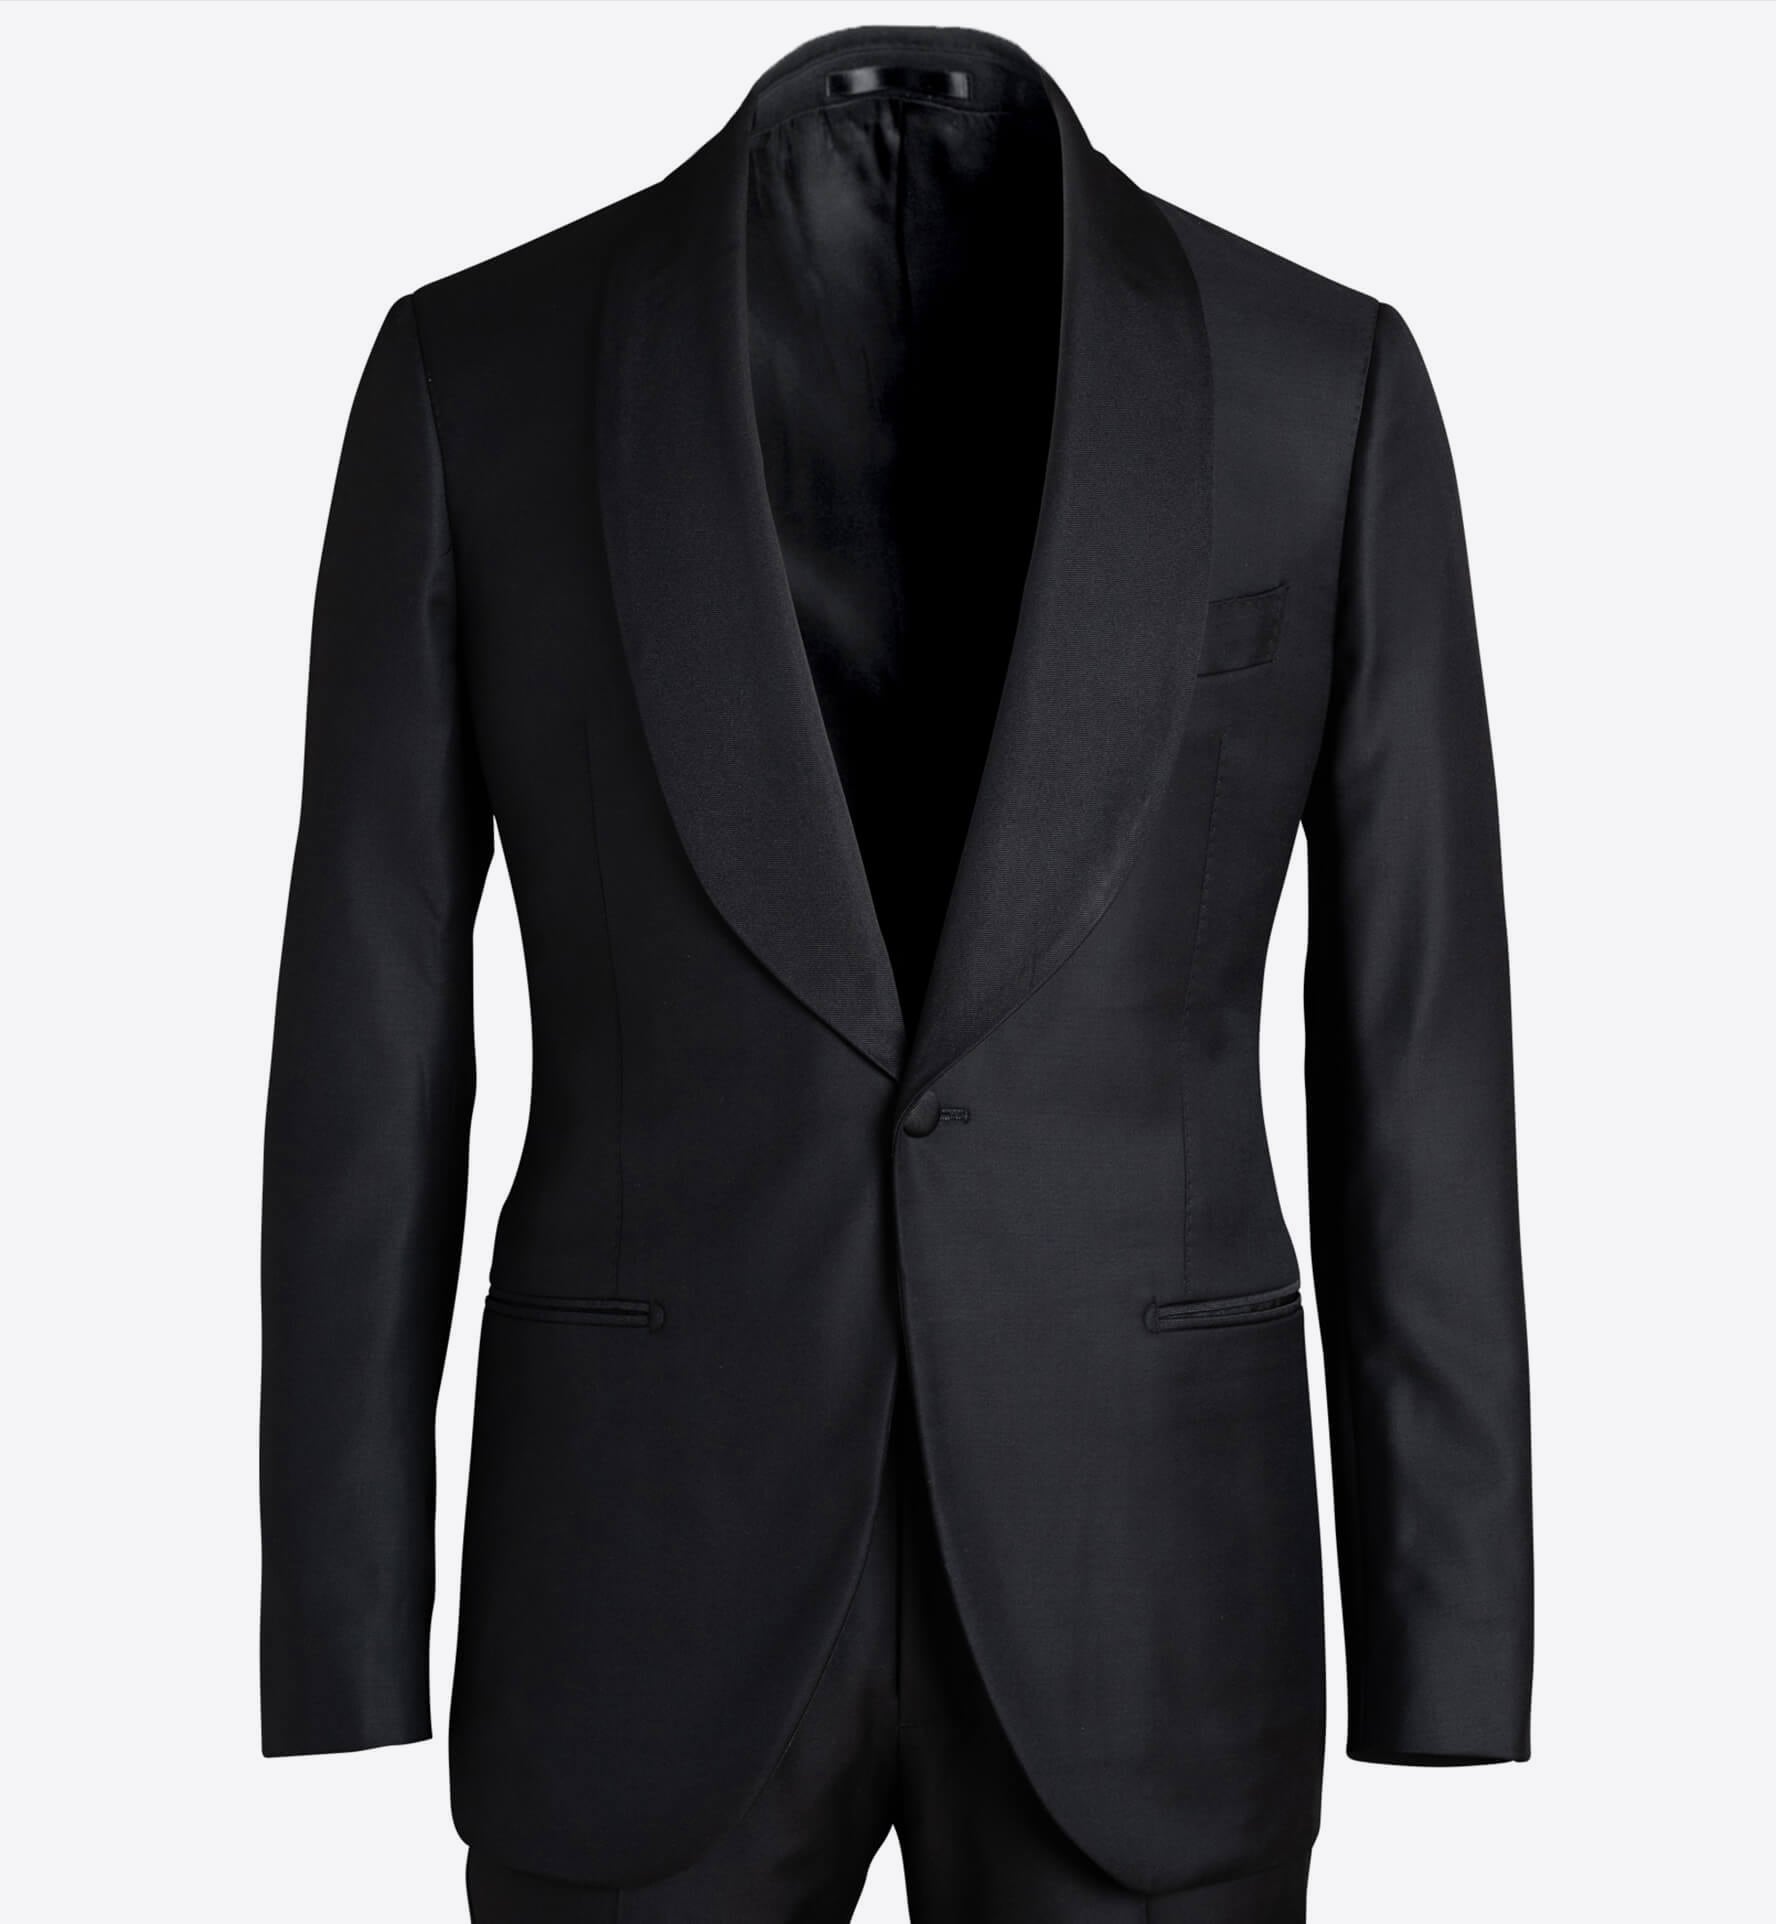 Mayfair Black Shawl Lapel Tuxedo Jacket - Custom Fit Tailored Clothing